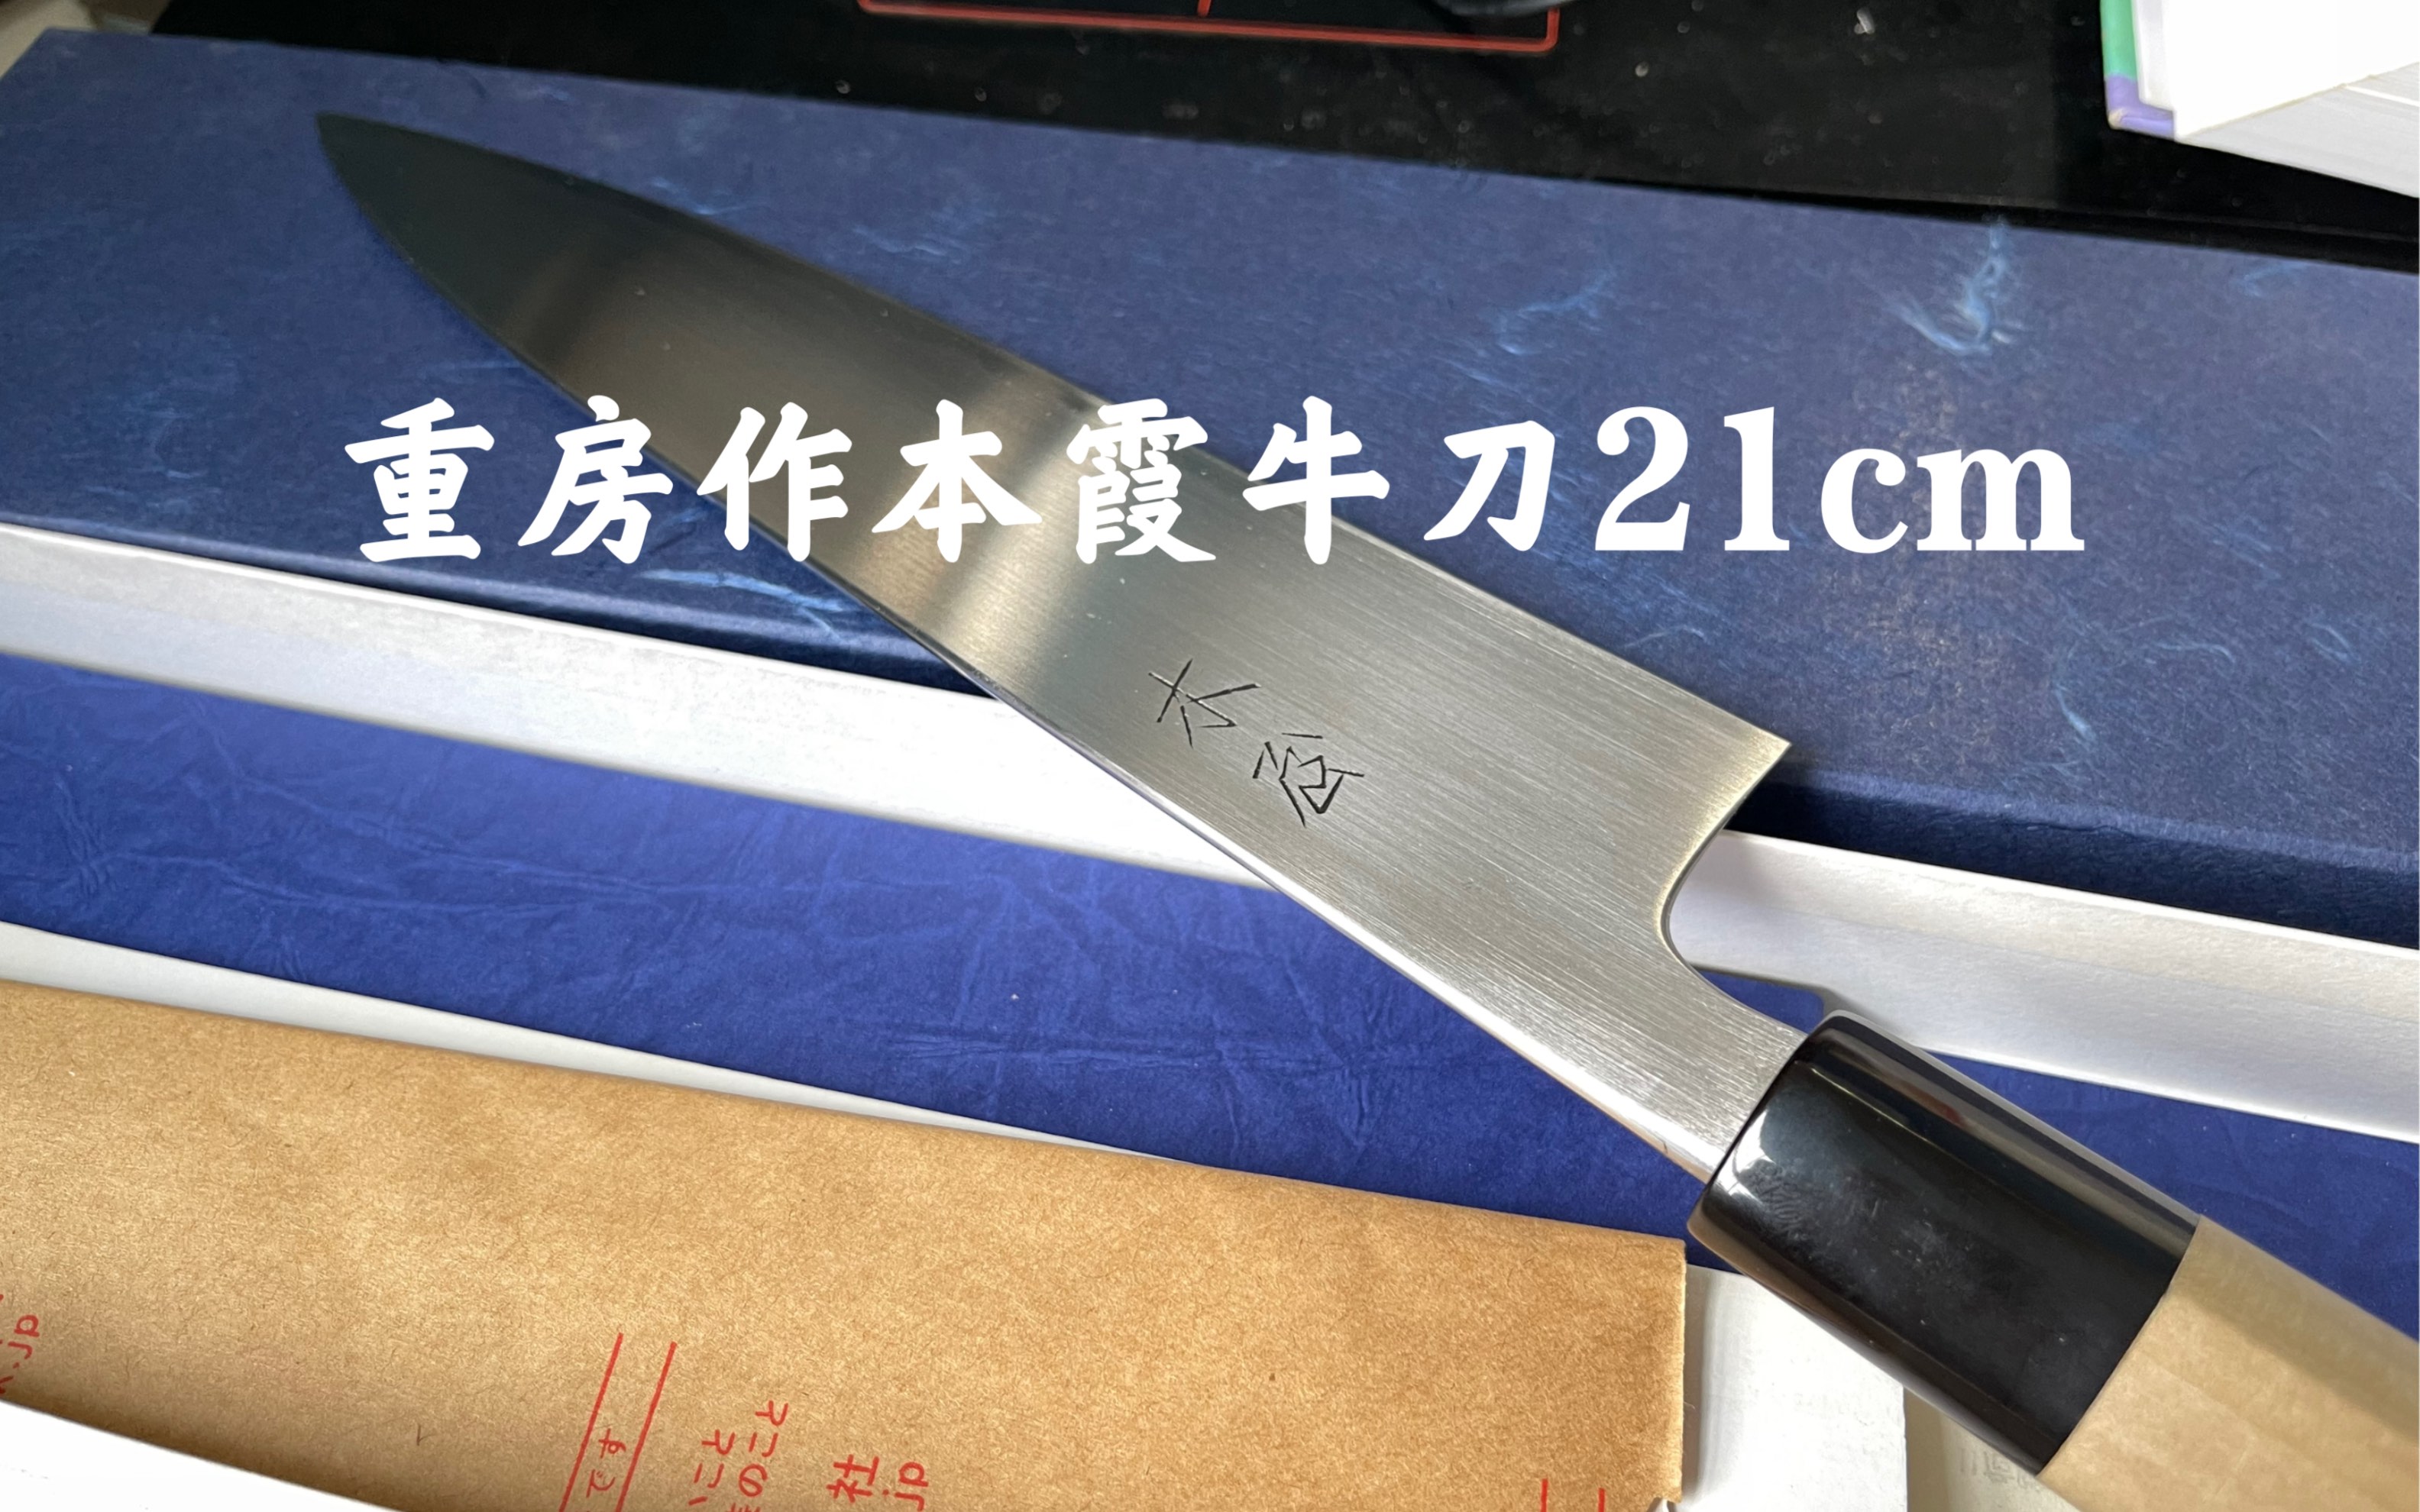 ミソノ UX10シリーズ 牛刀サーモン No.765 30cm - carreiraturbinada.com.br